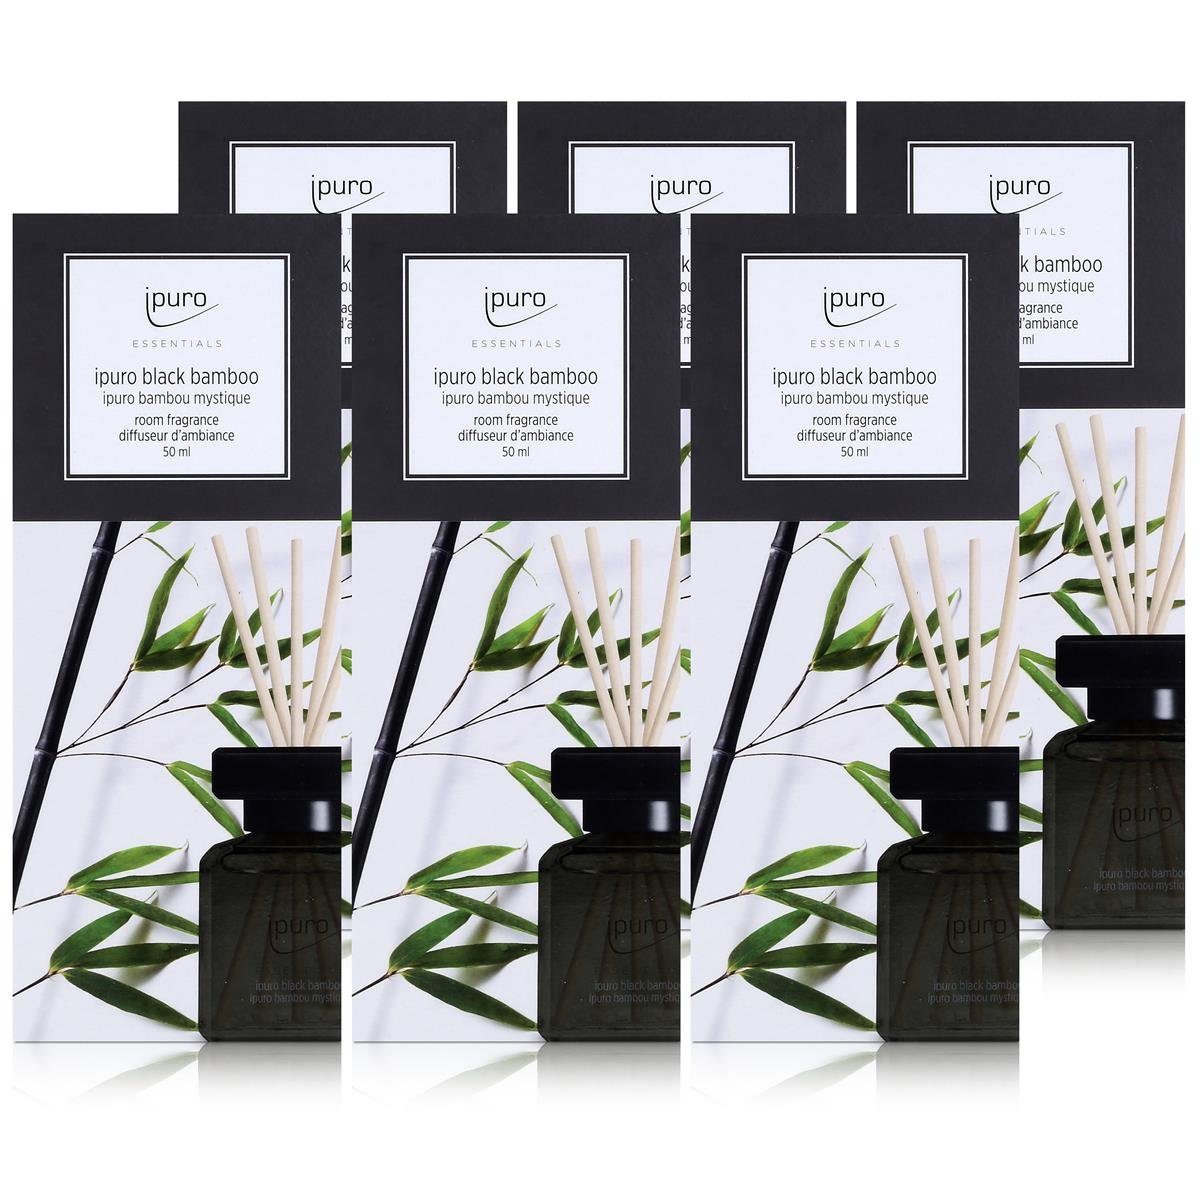 IPURO Raumduft Essentials by Ipuro black bamboo 50ml Raumduft (6er Pack)